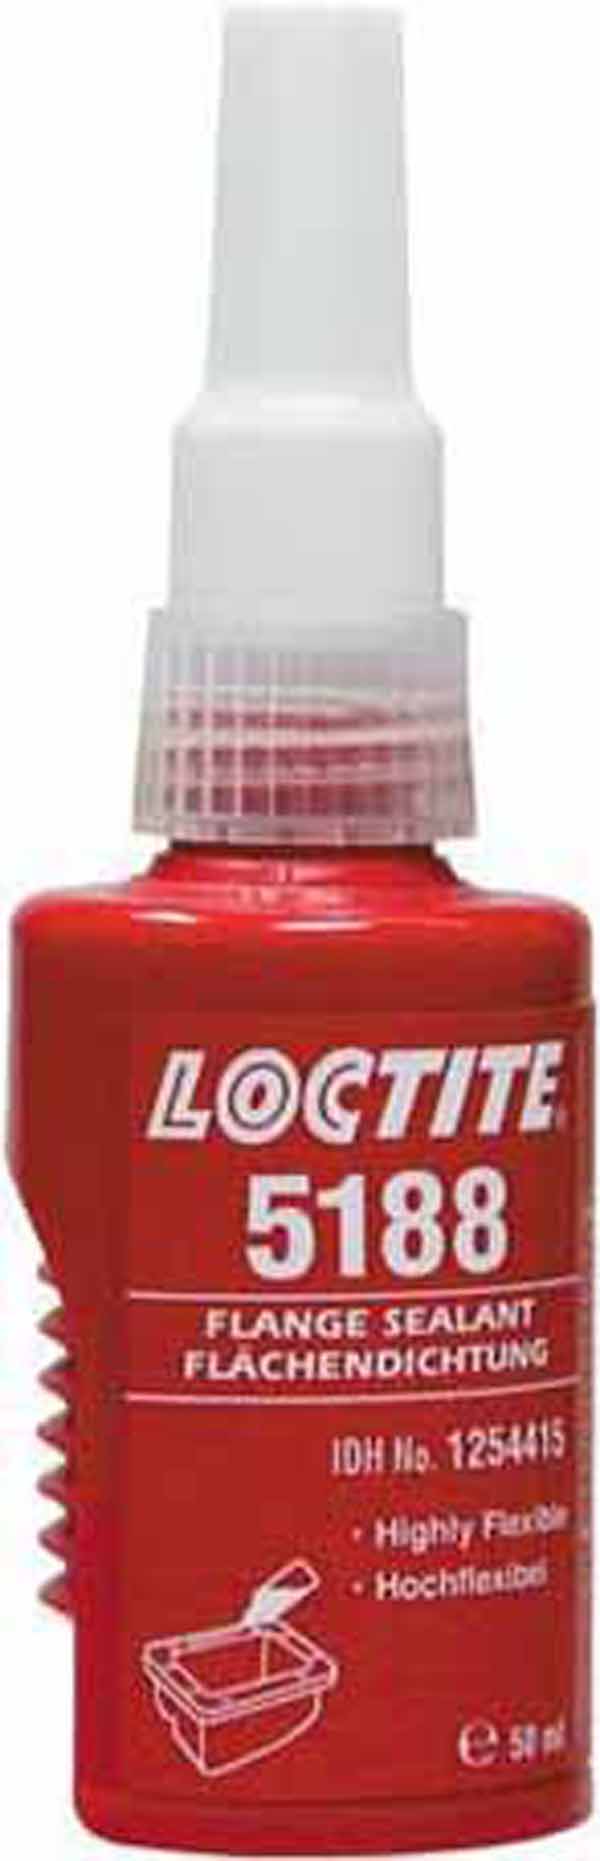 Loctite 5188